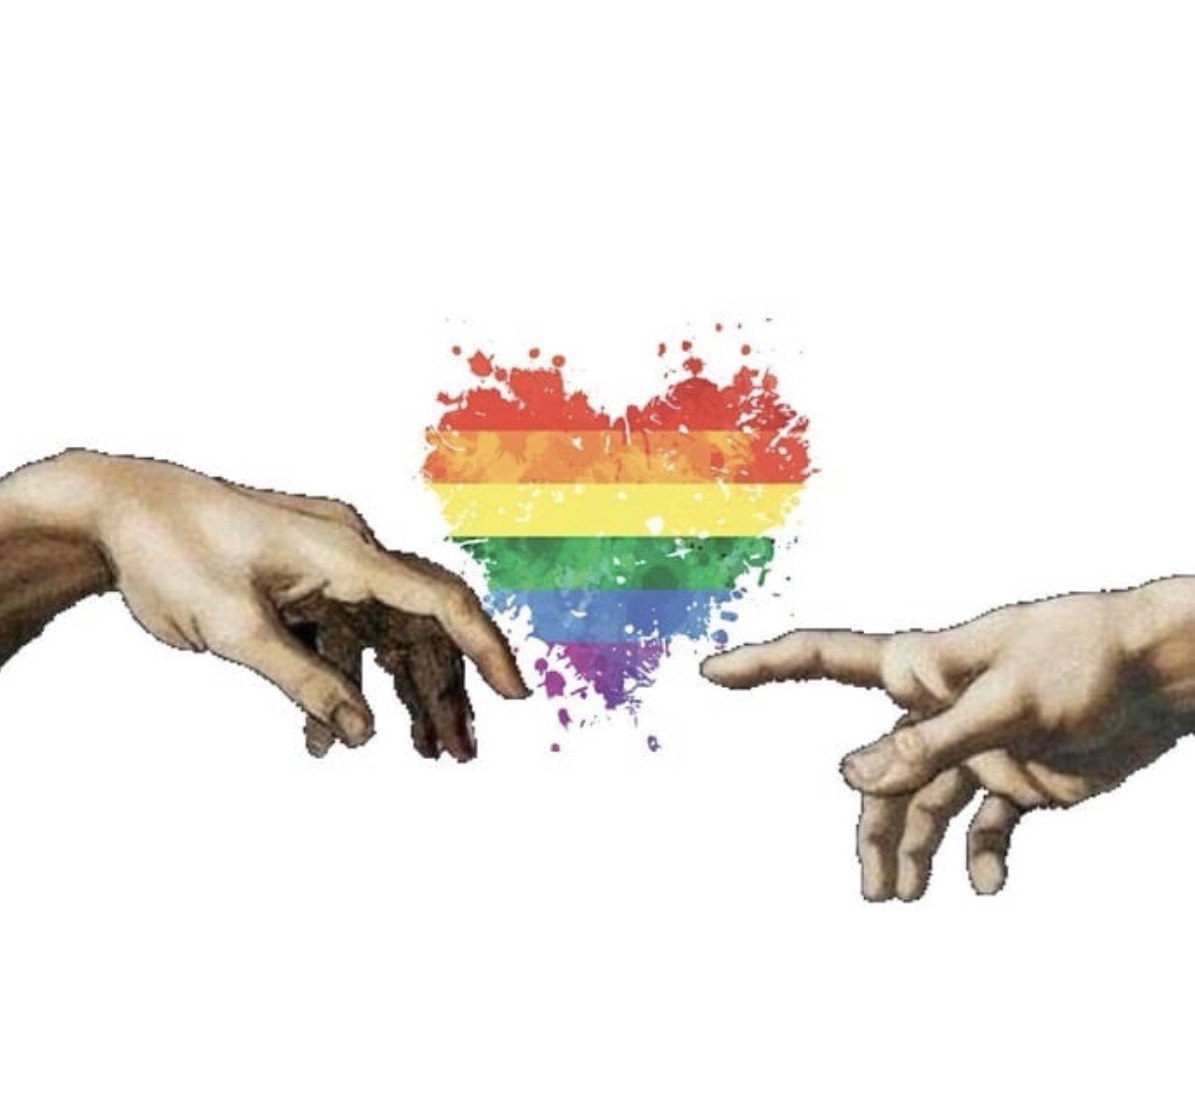 Шаг к прогрессу: Ватикан разрешил благословлять однополые пары